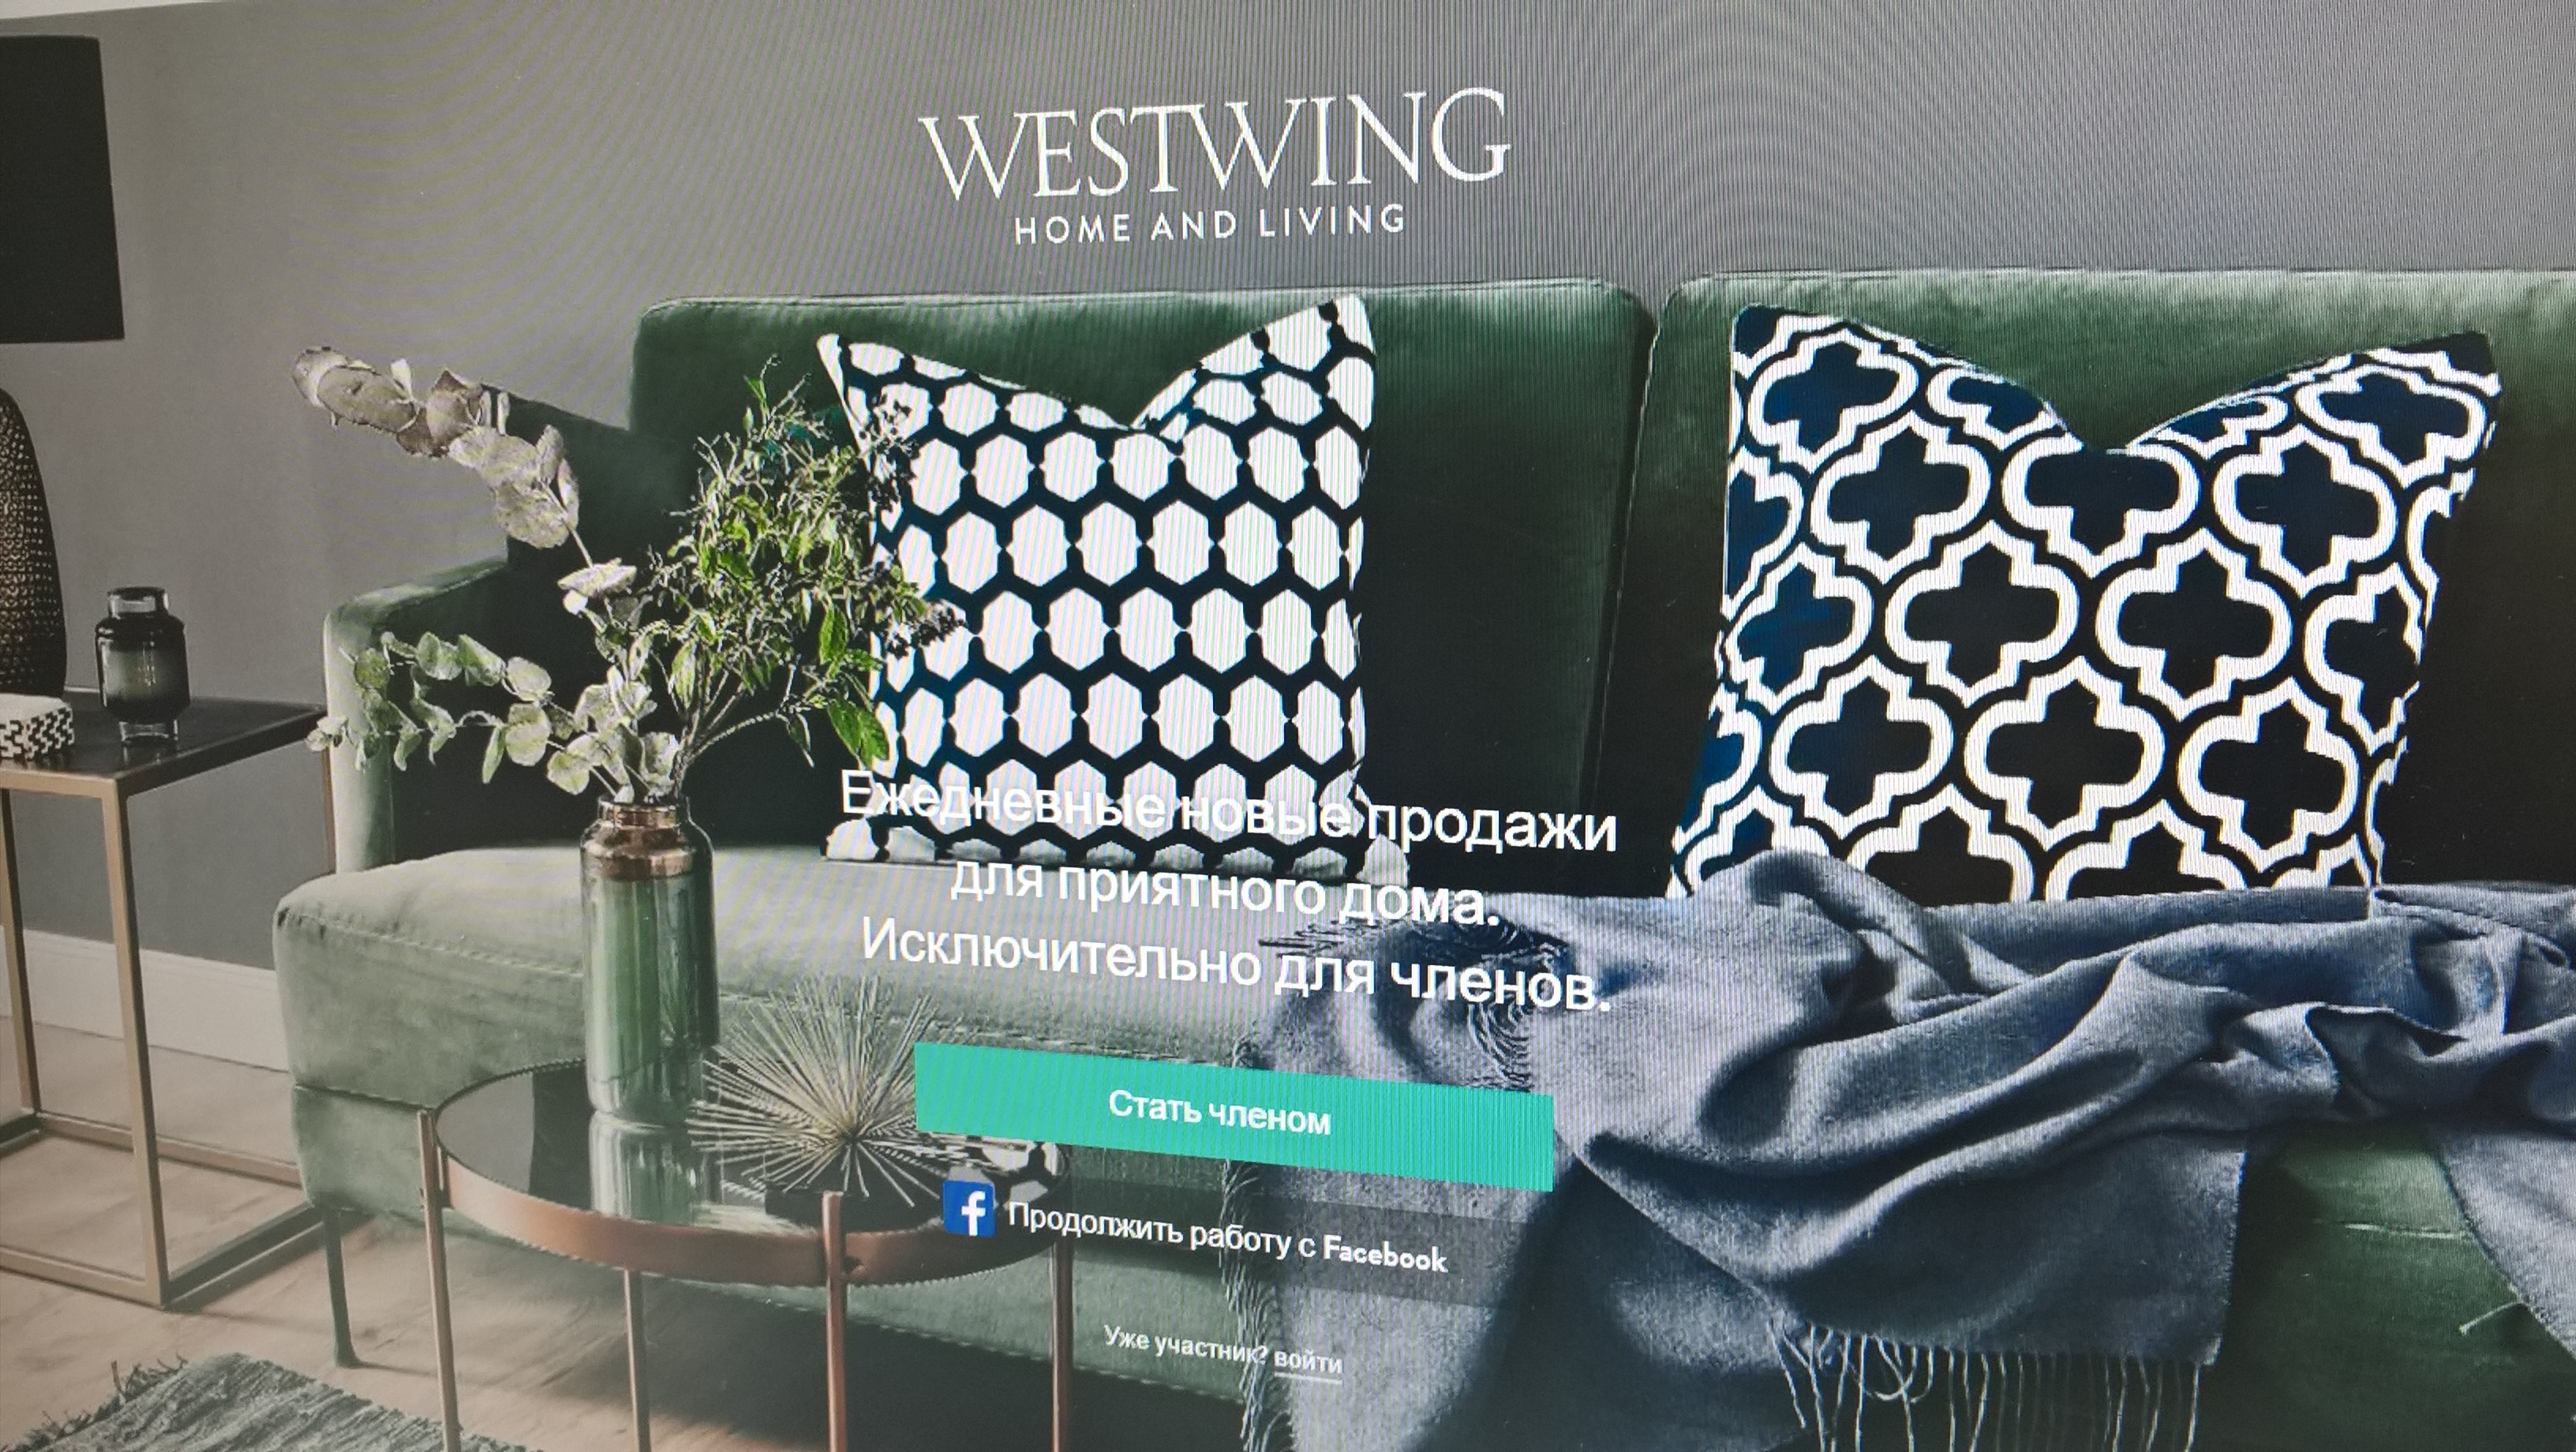 Онлайн-магазин дизанерской мебели и декора для дома «Westwing»